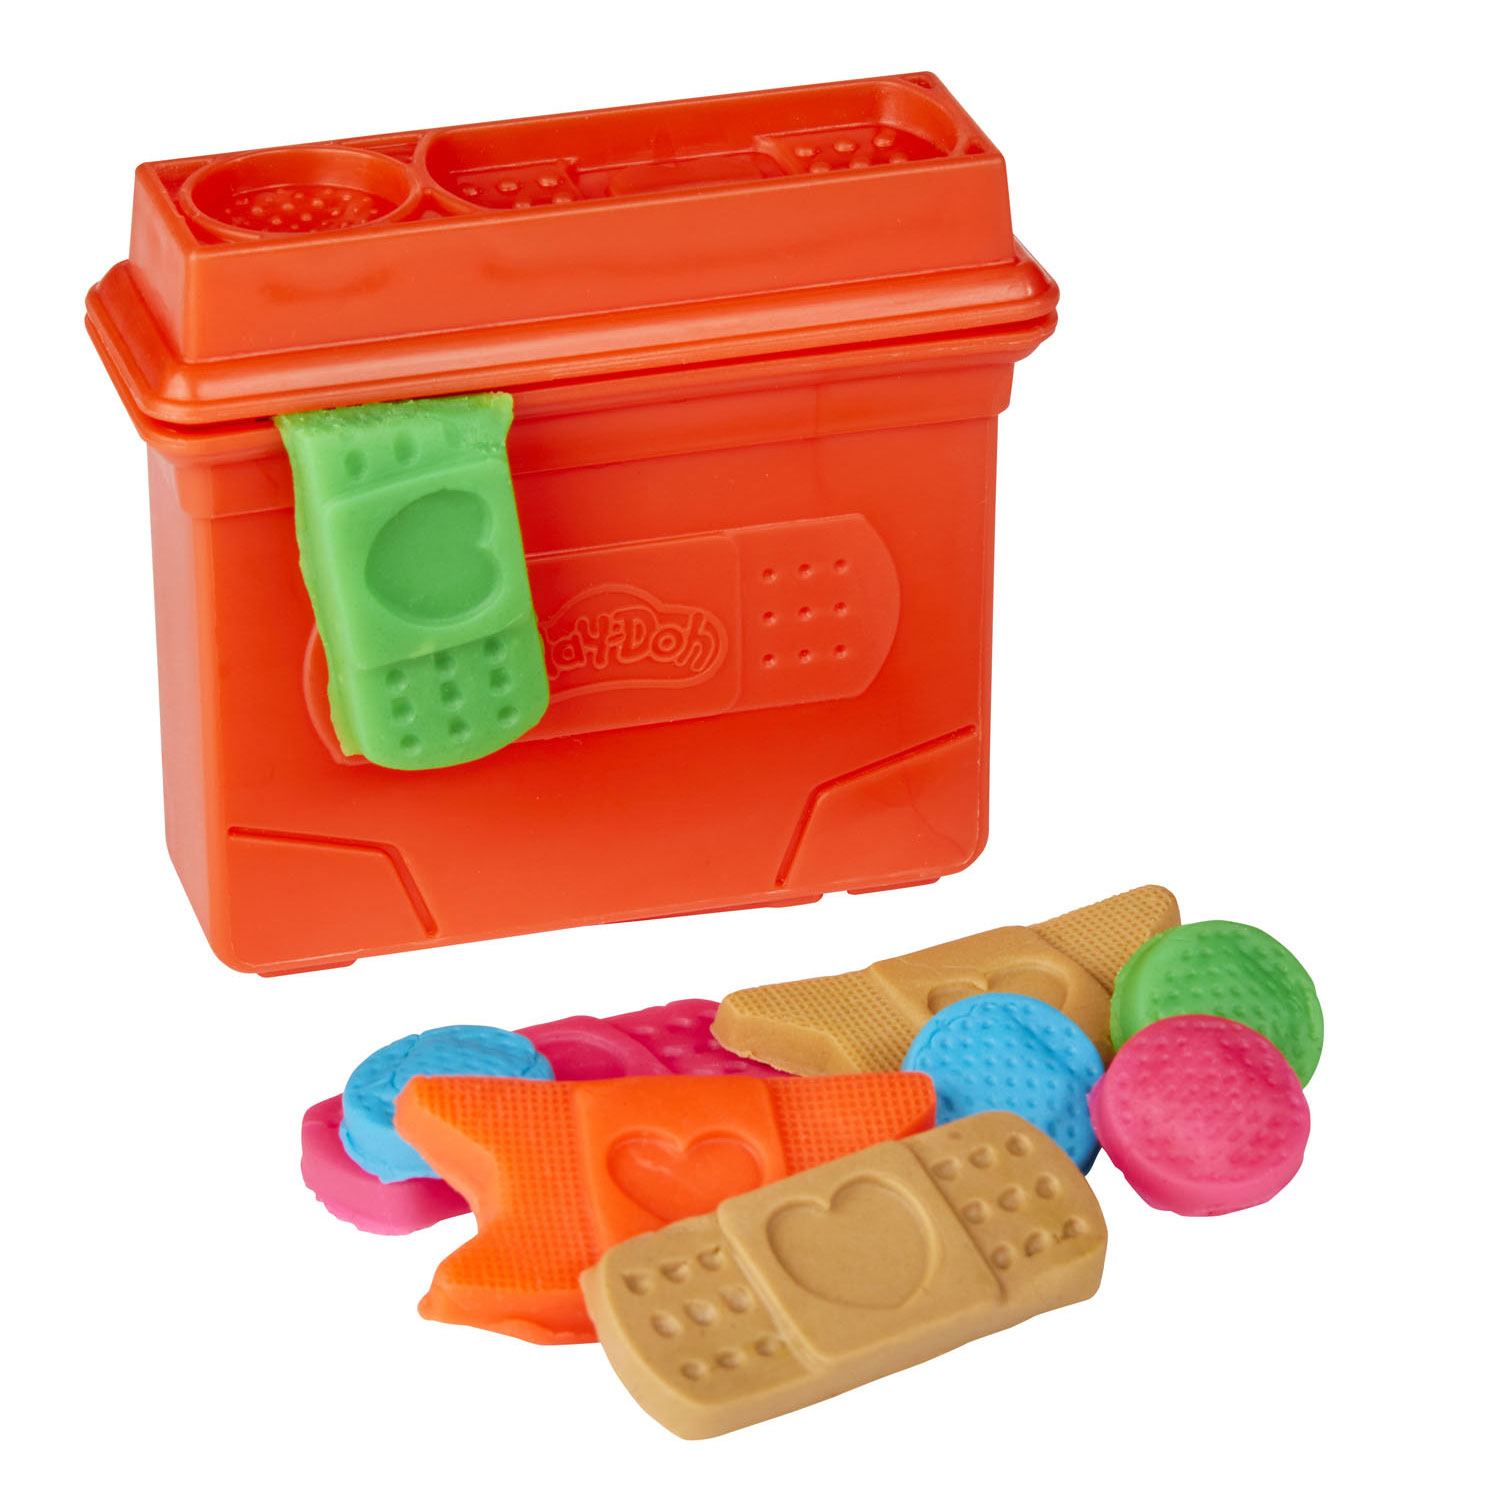 Play-Doh Care N Carry Vet - Coffret de jeu en argile